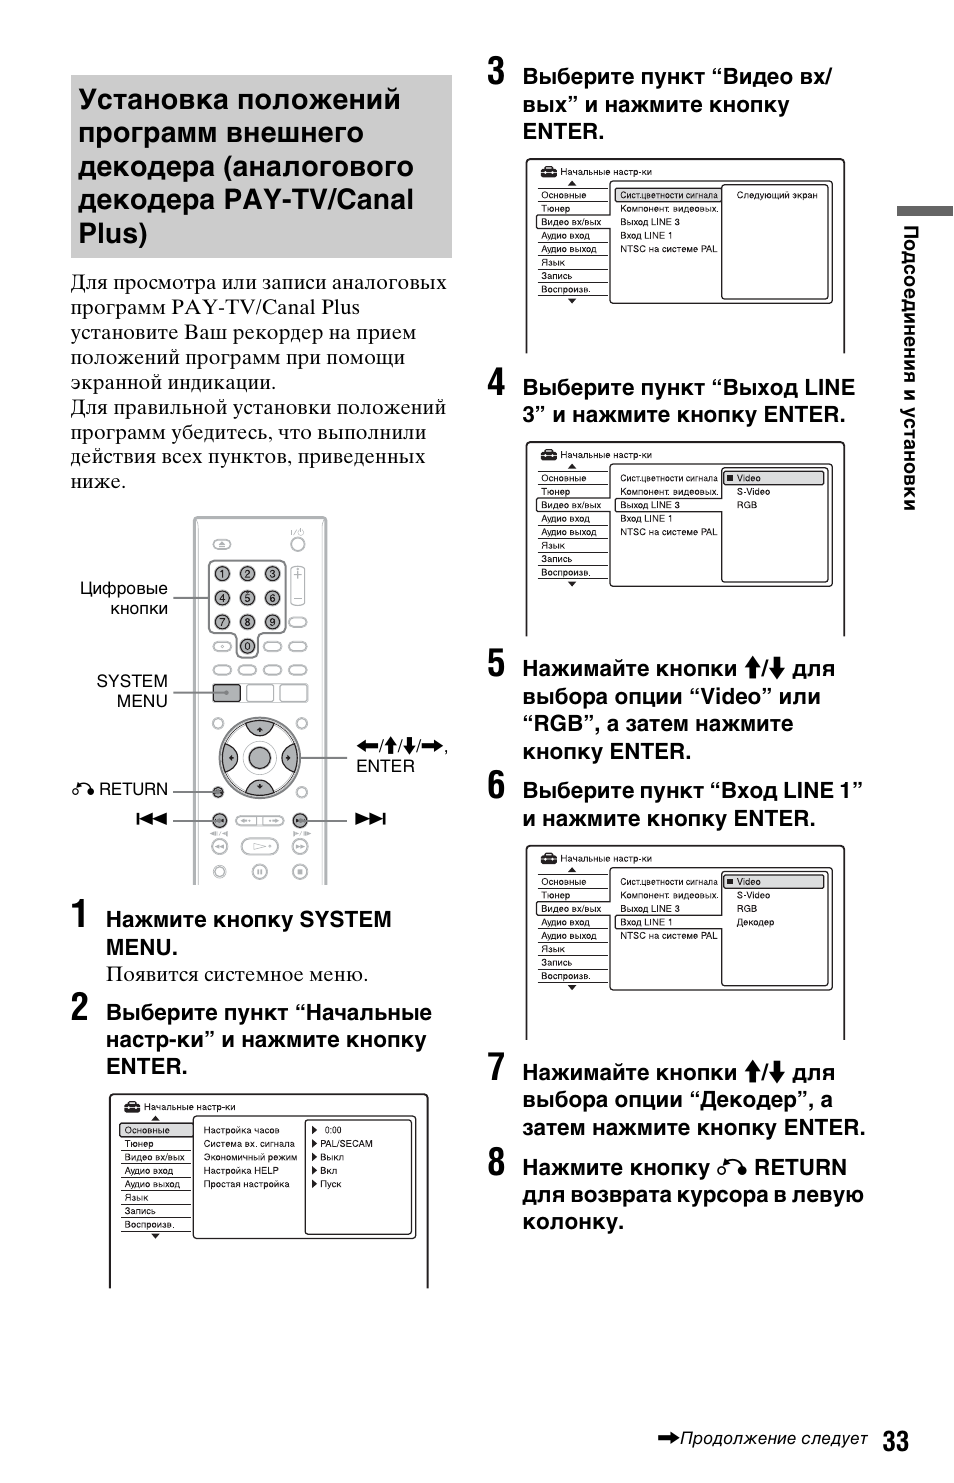 Установка положений программ внешнего декодера, Аналогового декодера pay-tv/canal plus) | Инструкция по эксплуатации Sony RDR-GX350 | Страница 33 / 136